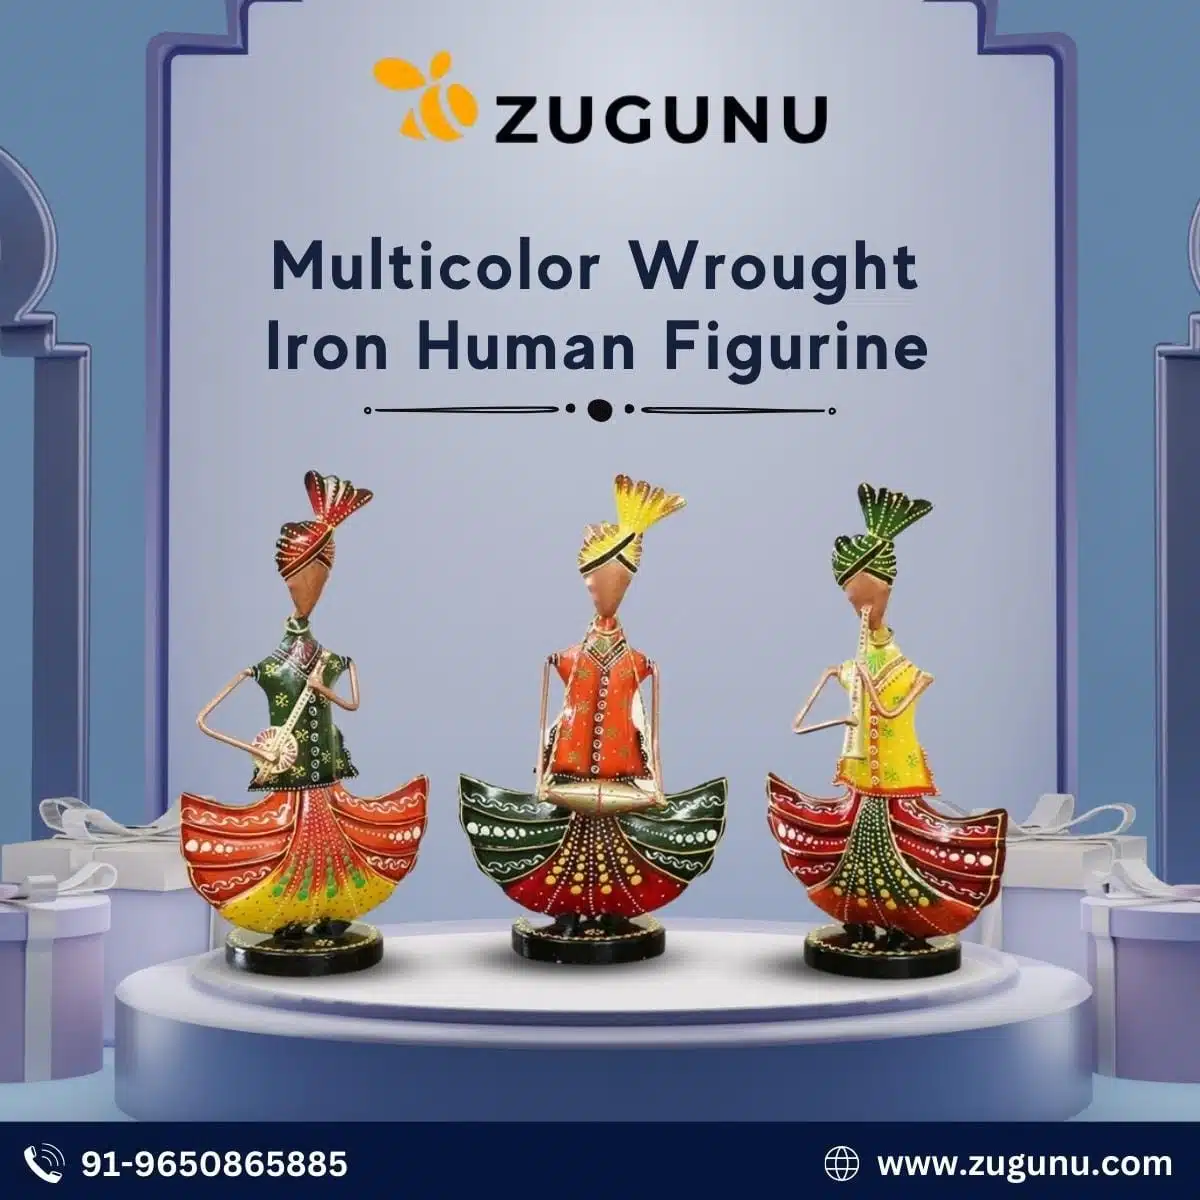 Multicolor Wrought Iron Human Figurine Zugunu.com 